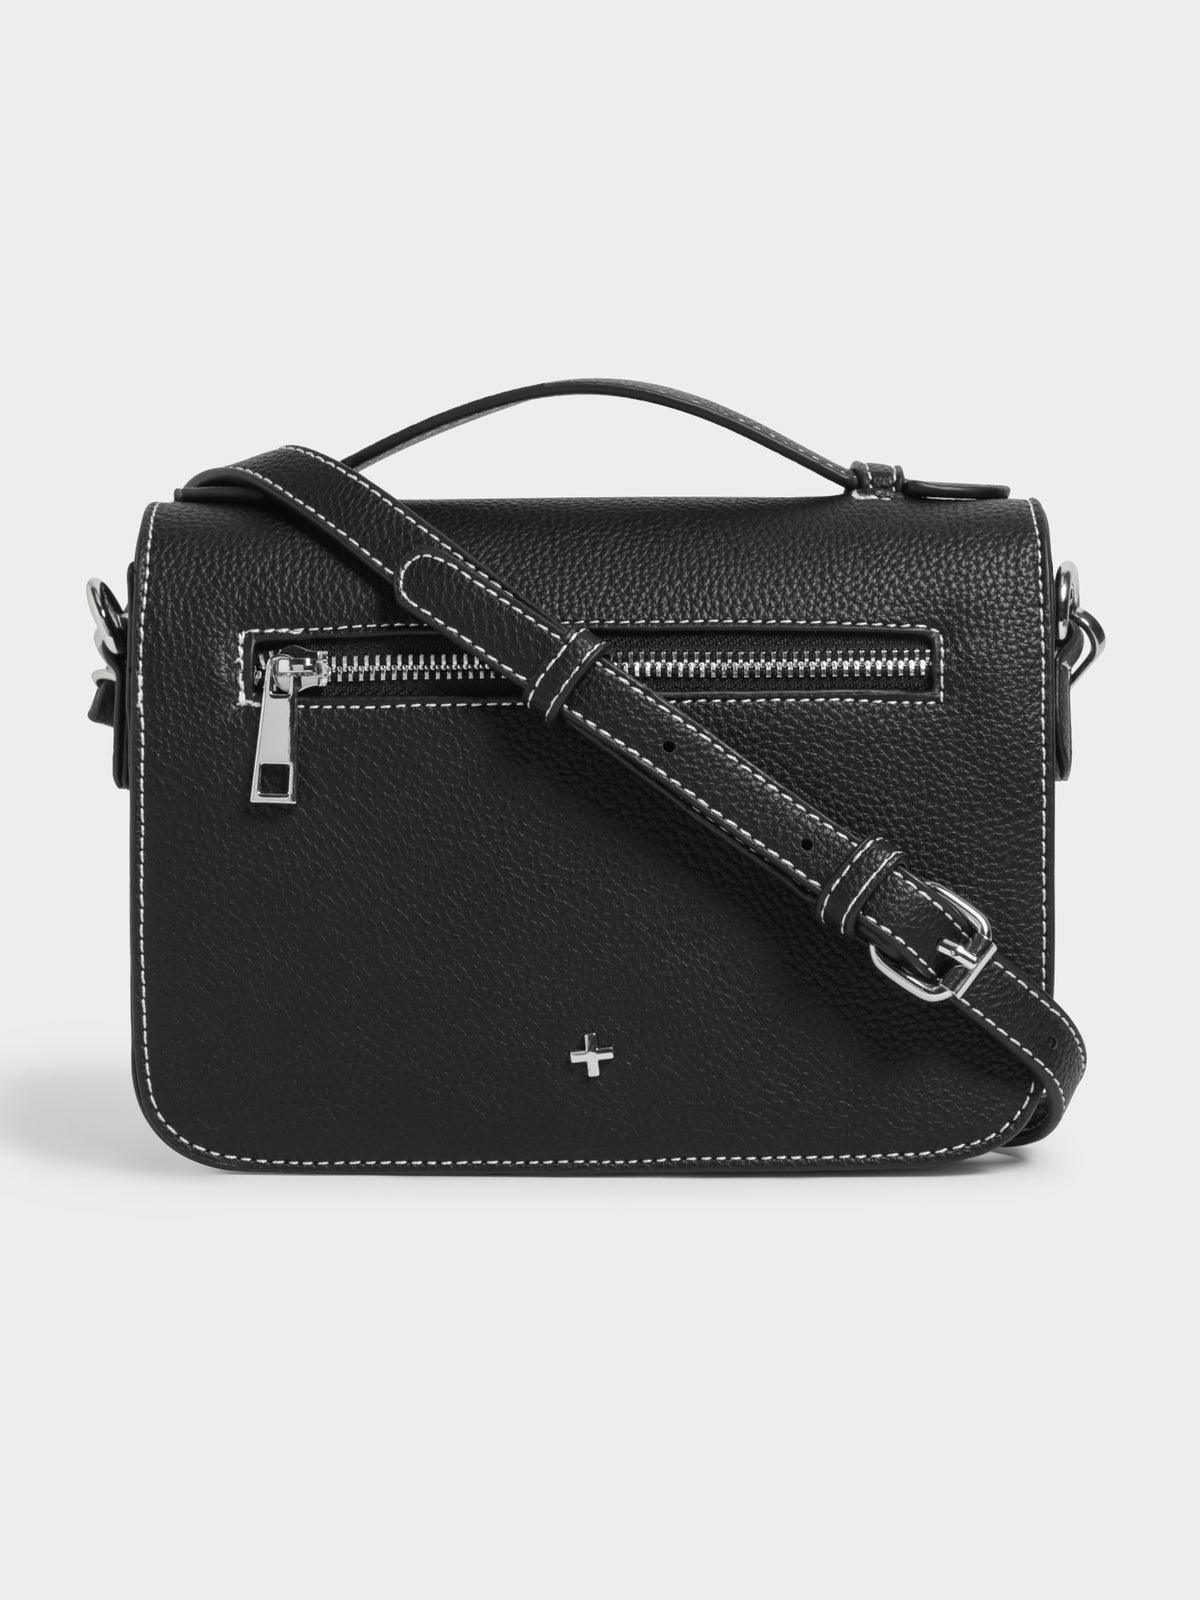 Lisl Cross Body Handbag in Black